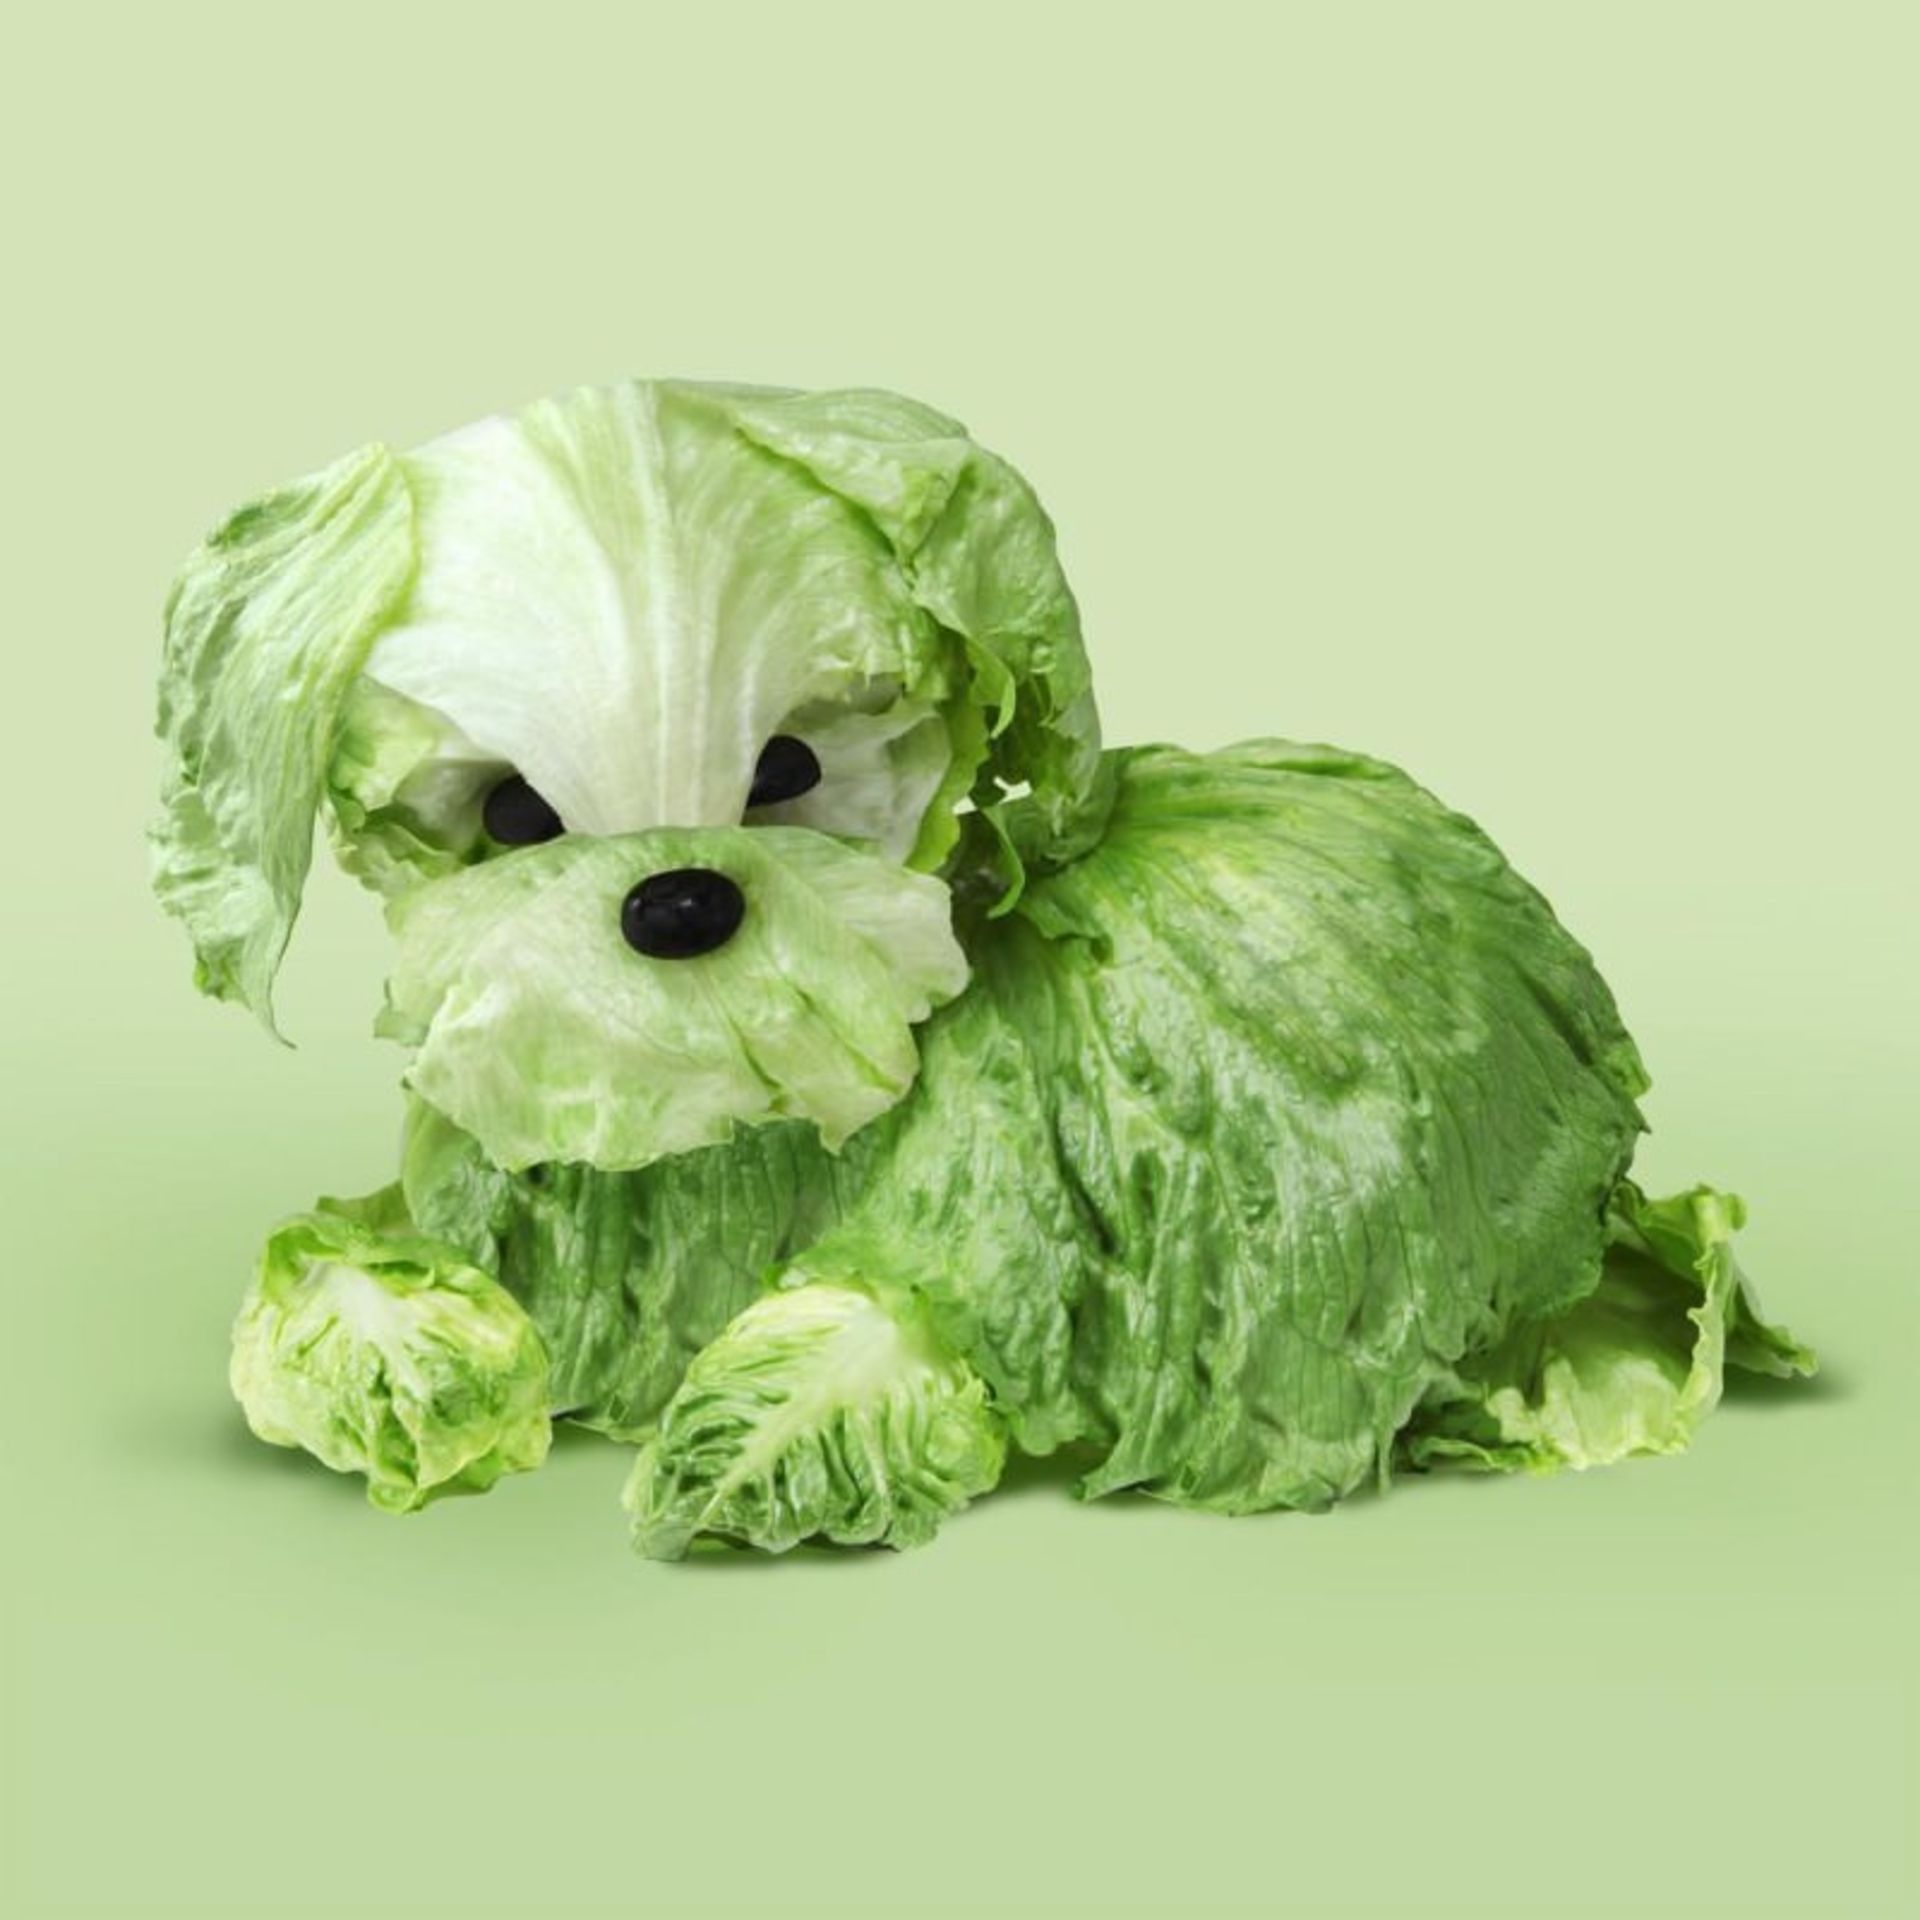 تصاویر حیوانات با استفاده از سبزیجات و مواد خوراکی